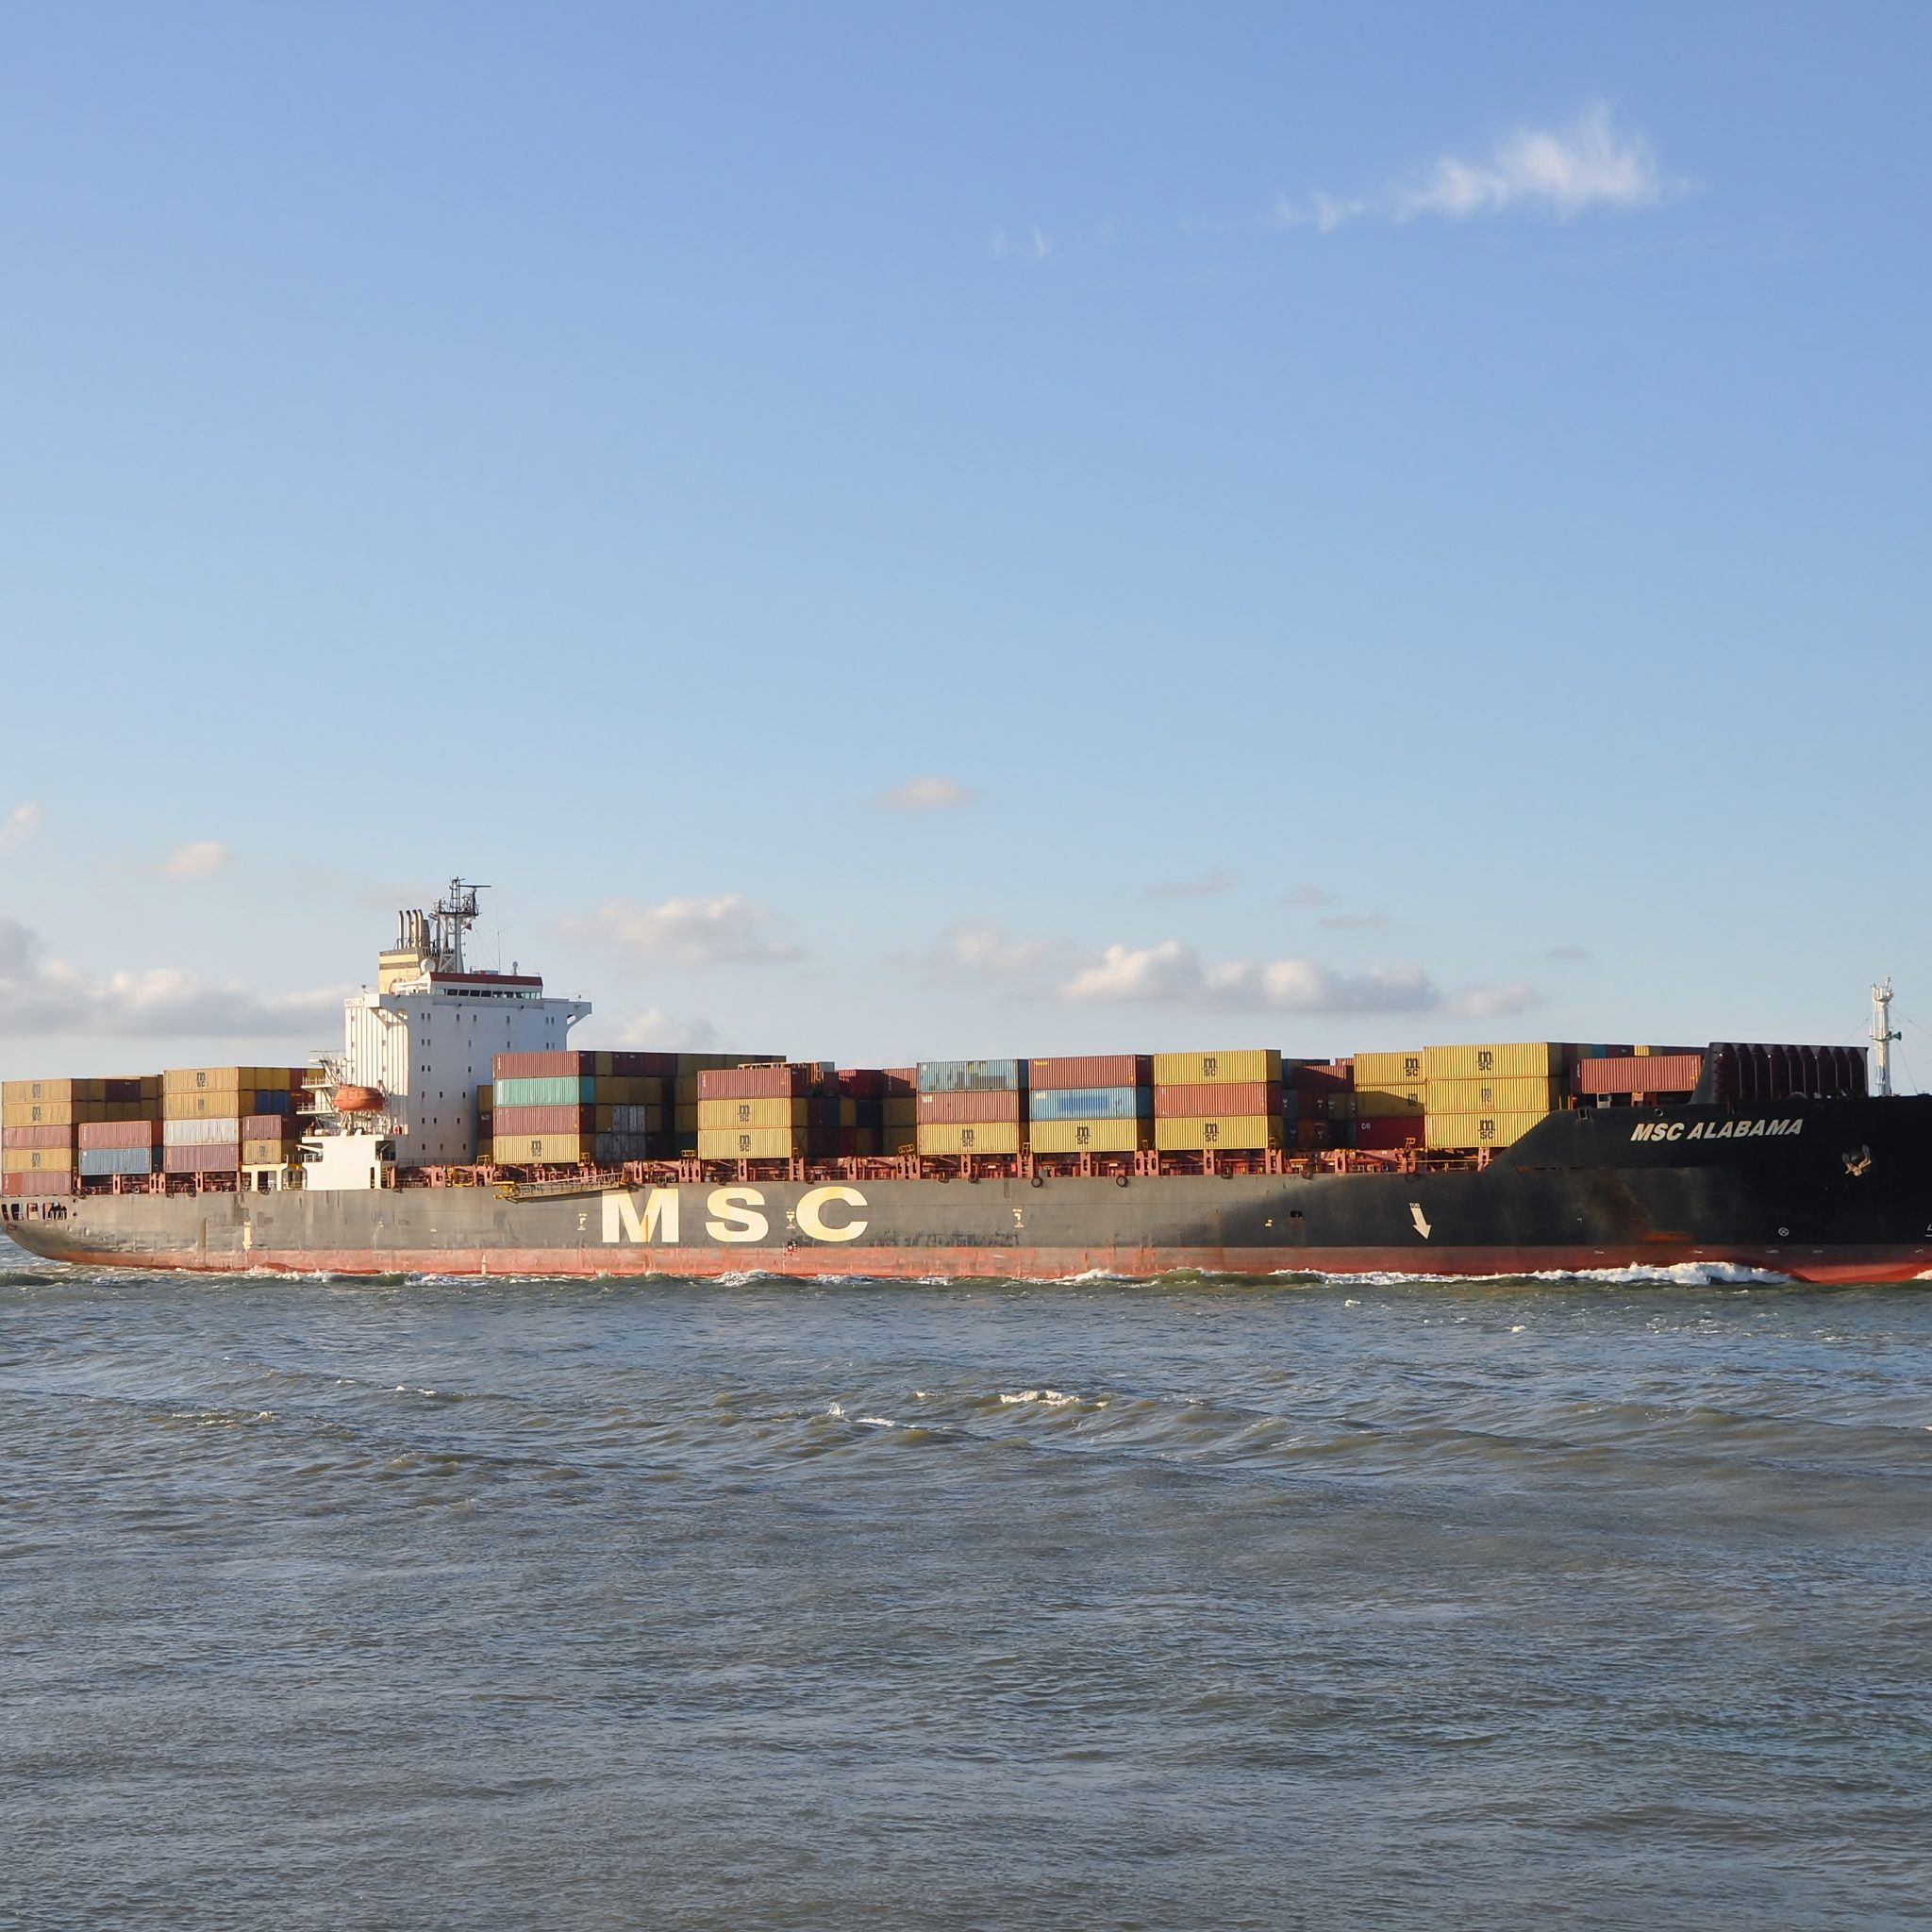 MSC Alabama  passeert vrijdag 13 september Terneuzen met bestemming Antwerpen. Daarna gaat het containerschip voor de eerste keer door naar Vlissingen. (Foto Adri van de Wege)